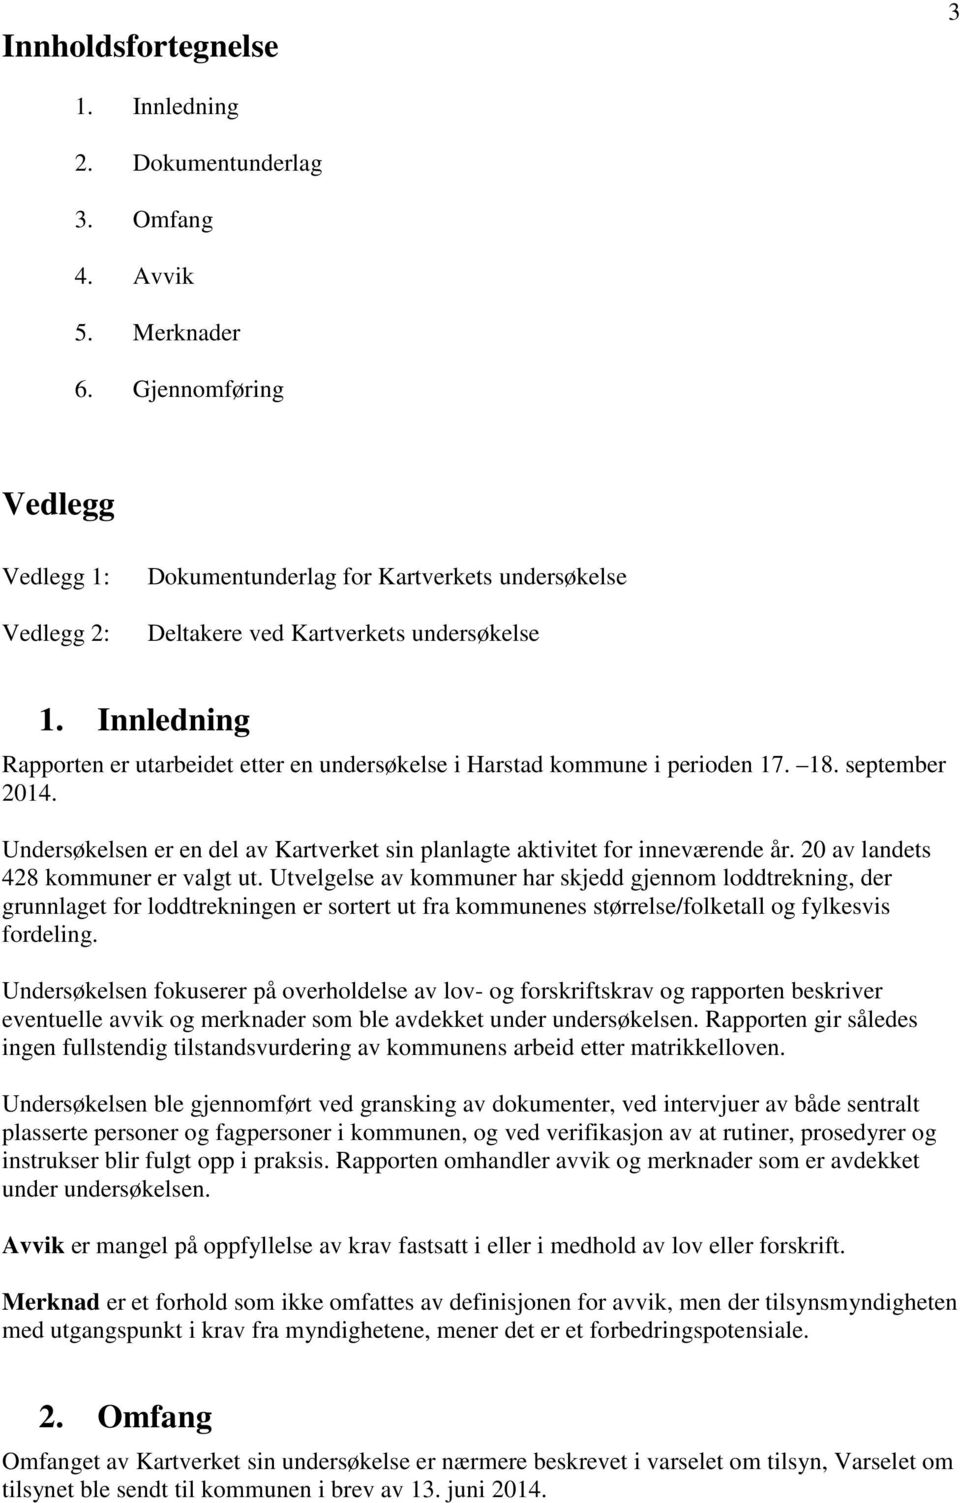 Innledning Rapporten er utarbeidet etter en undersøkelse i Harstad kommune i perioden 17. 18. september 2014. Undersøkelsen er en del av Kartverket sin planlagte aktivitet for inneværende år.